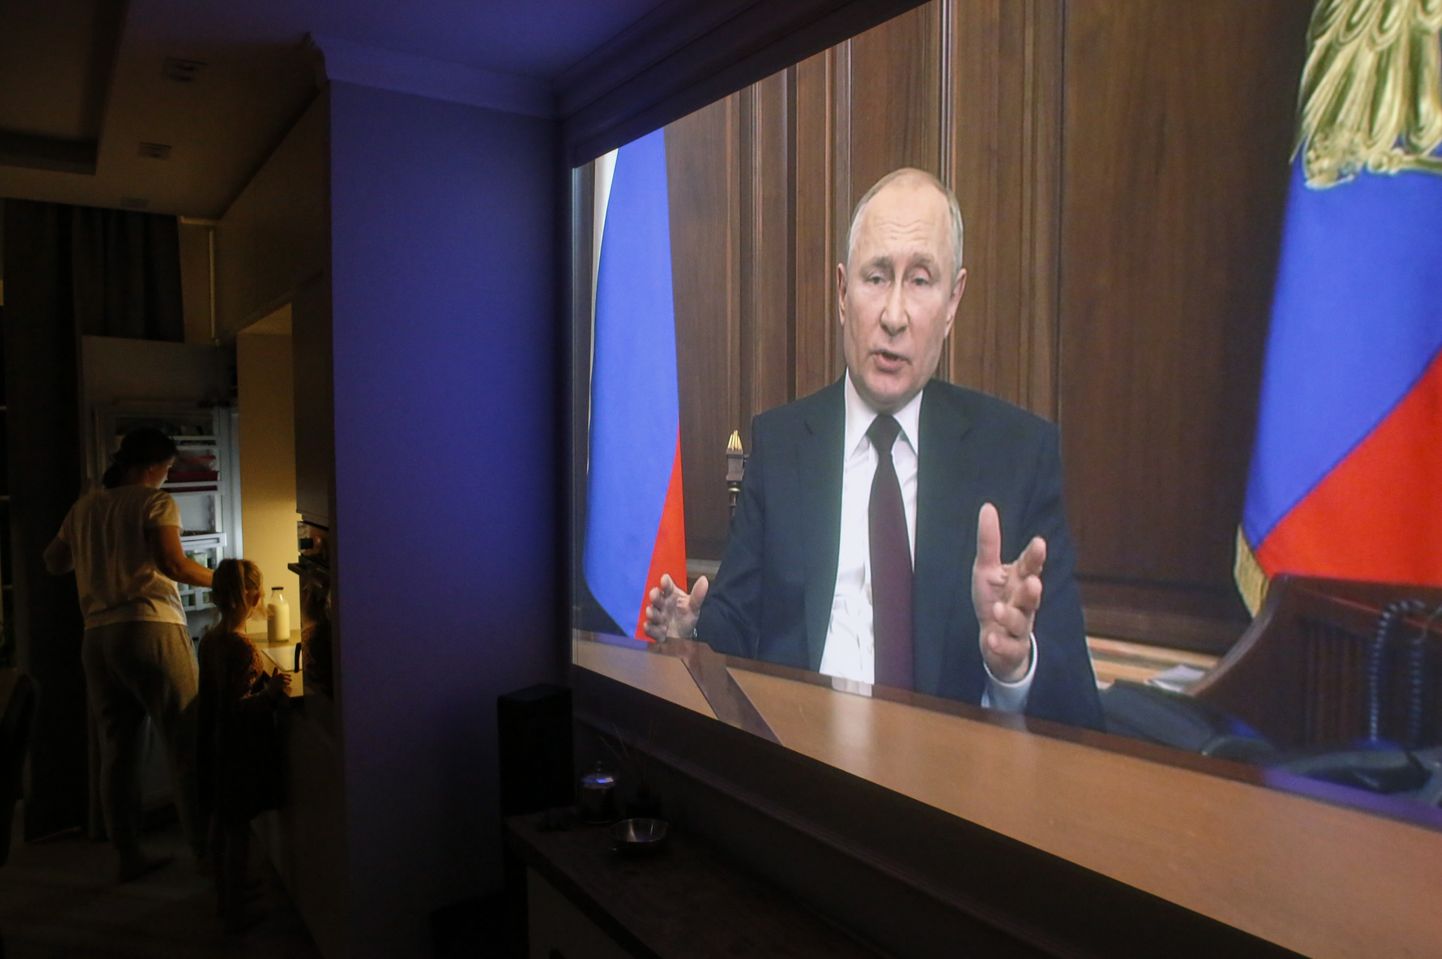 Vene pere 21. veebruaril televiisori vahendusel president Vladimir Putini pöördumisest osa saamas.